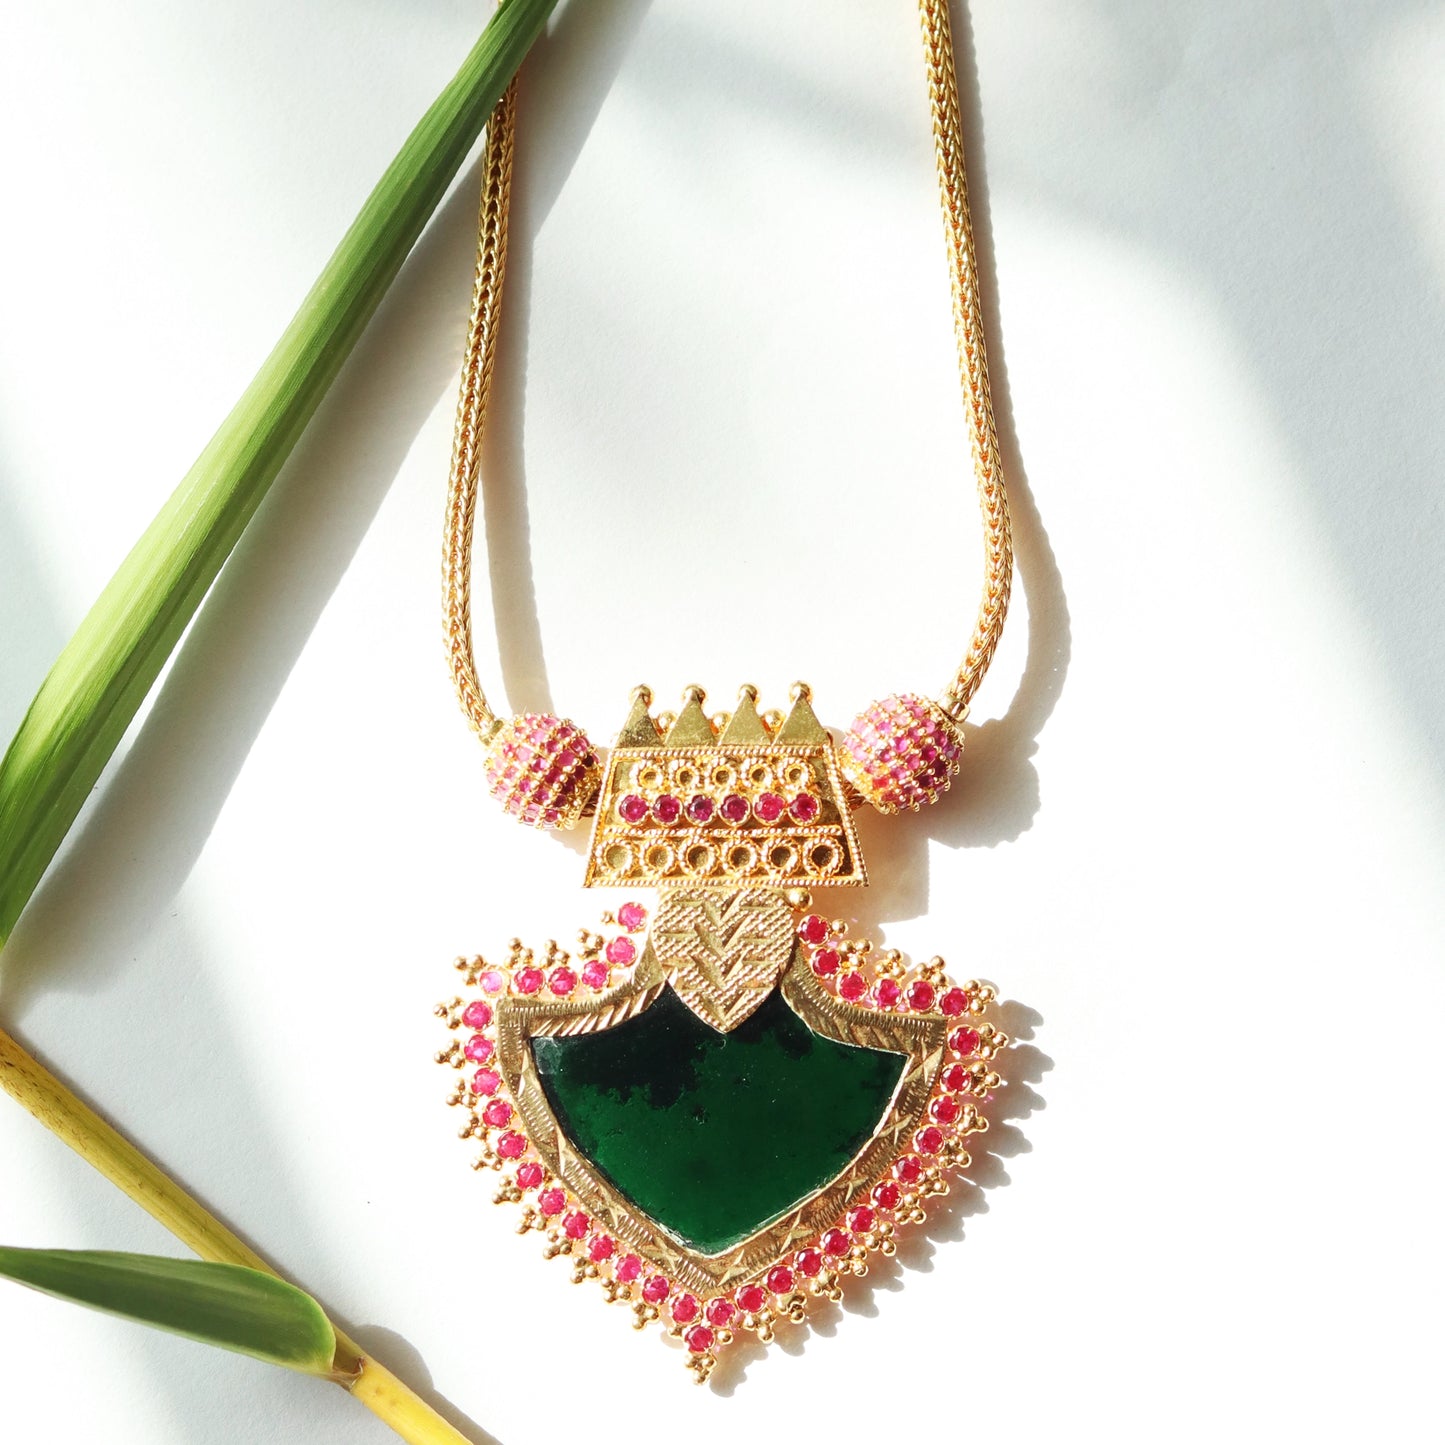 Kerala Palakka Necklace with Stone Studded Leaf-shaped Pendant